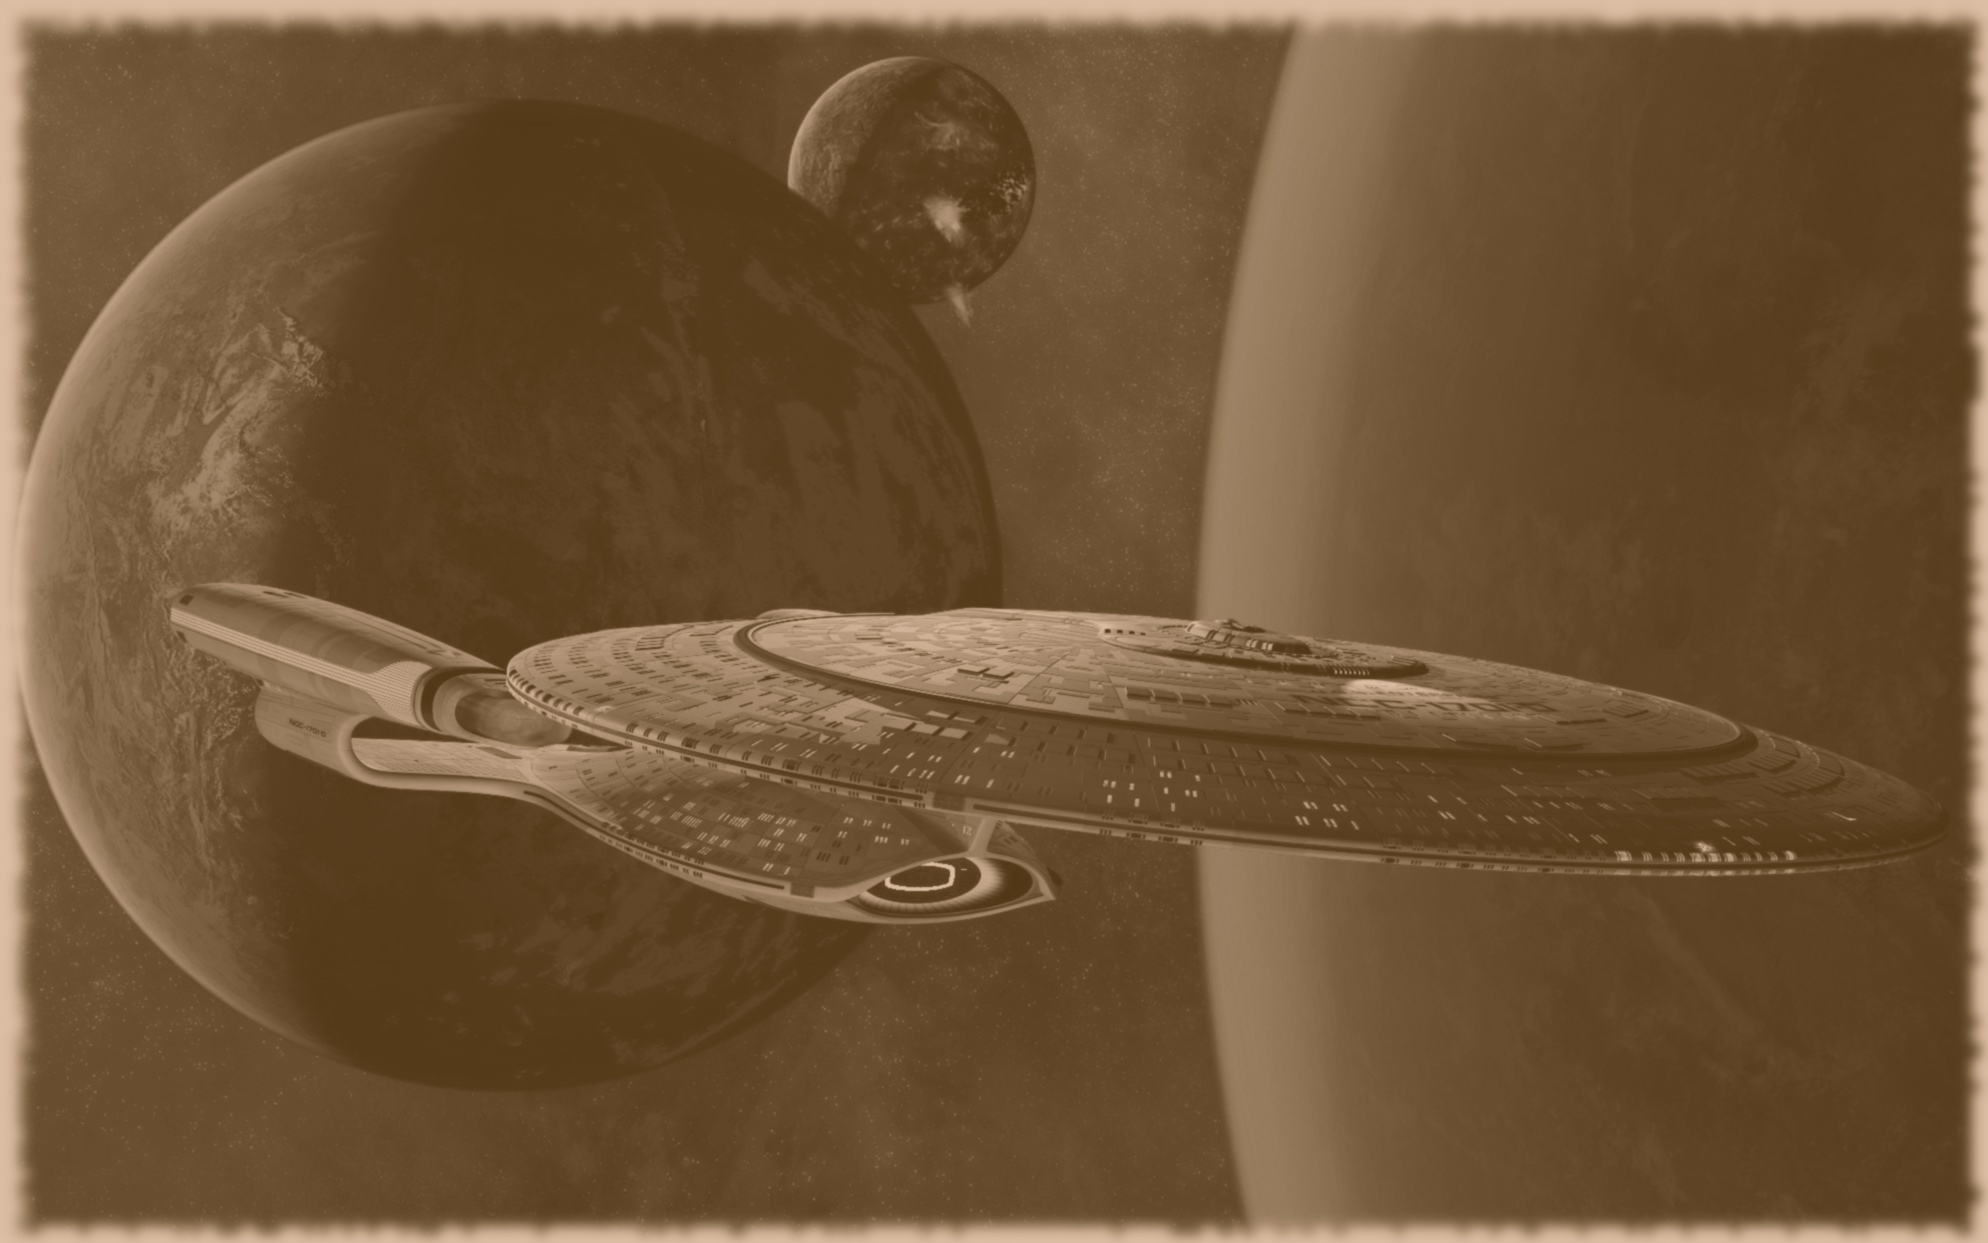 NCC-1701-D Enterprise by ApolloSerenus